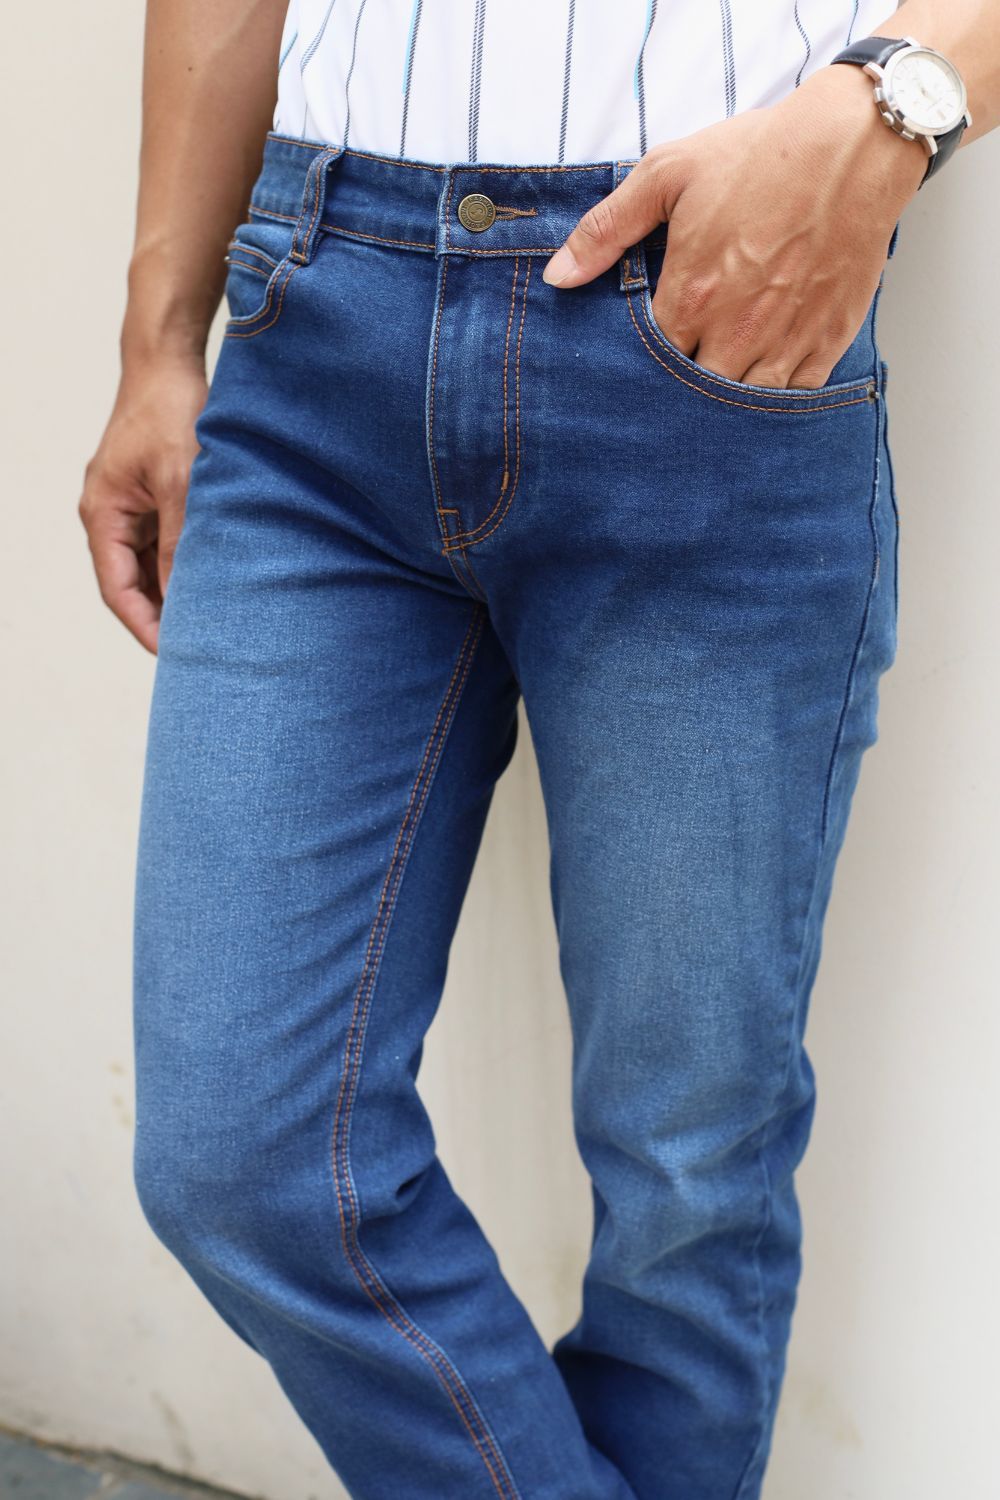  [Giảm 36%] Quần Jeans Cao Cấp Bền Màu, Chống Nhăn, Co Giãn 8QBDB004XAH 